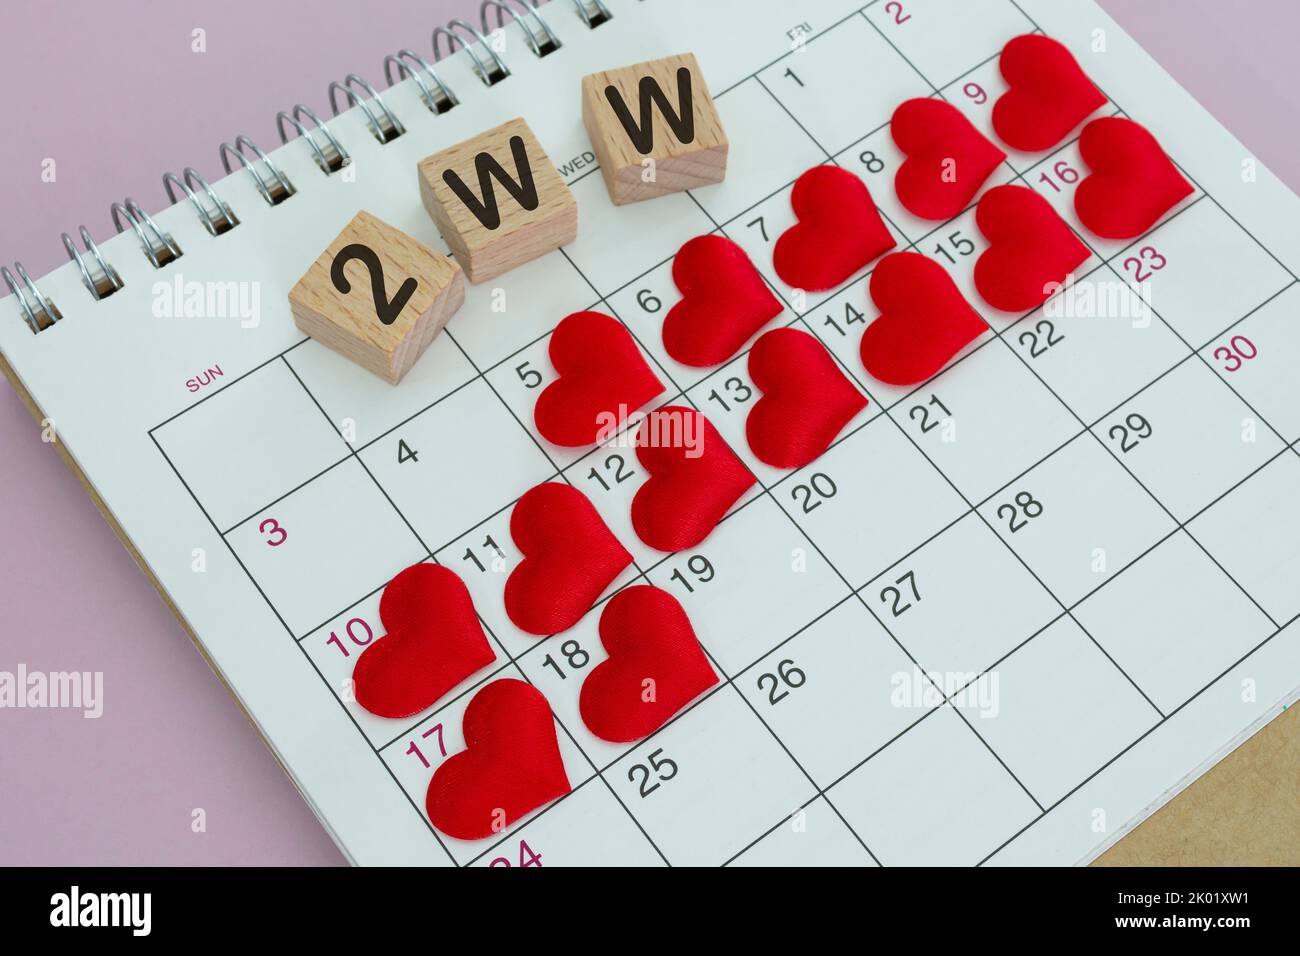 2WW mots sur bloc de bois avec coeur rouge sur le calendrier. Survivre les deux semaines attendez quand vous essayez de concevoir. Banque D'Images